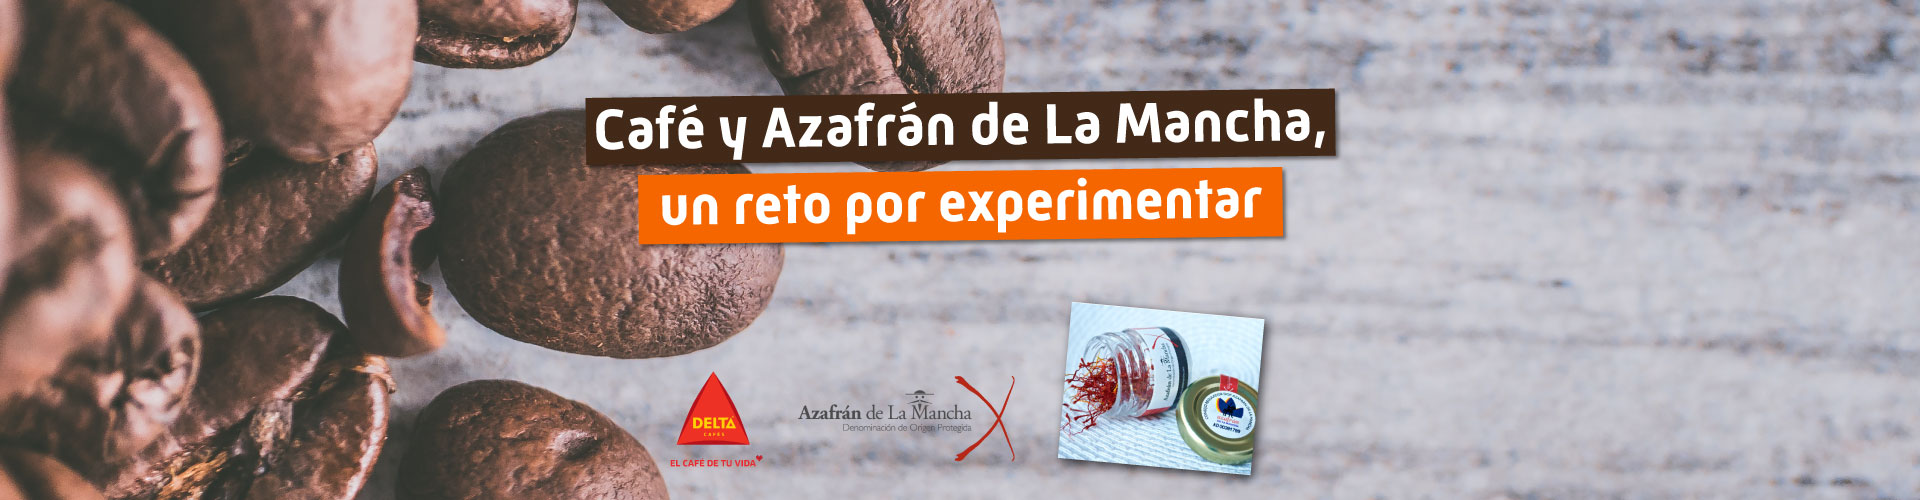 Café y Azafrán de La Mancha